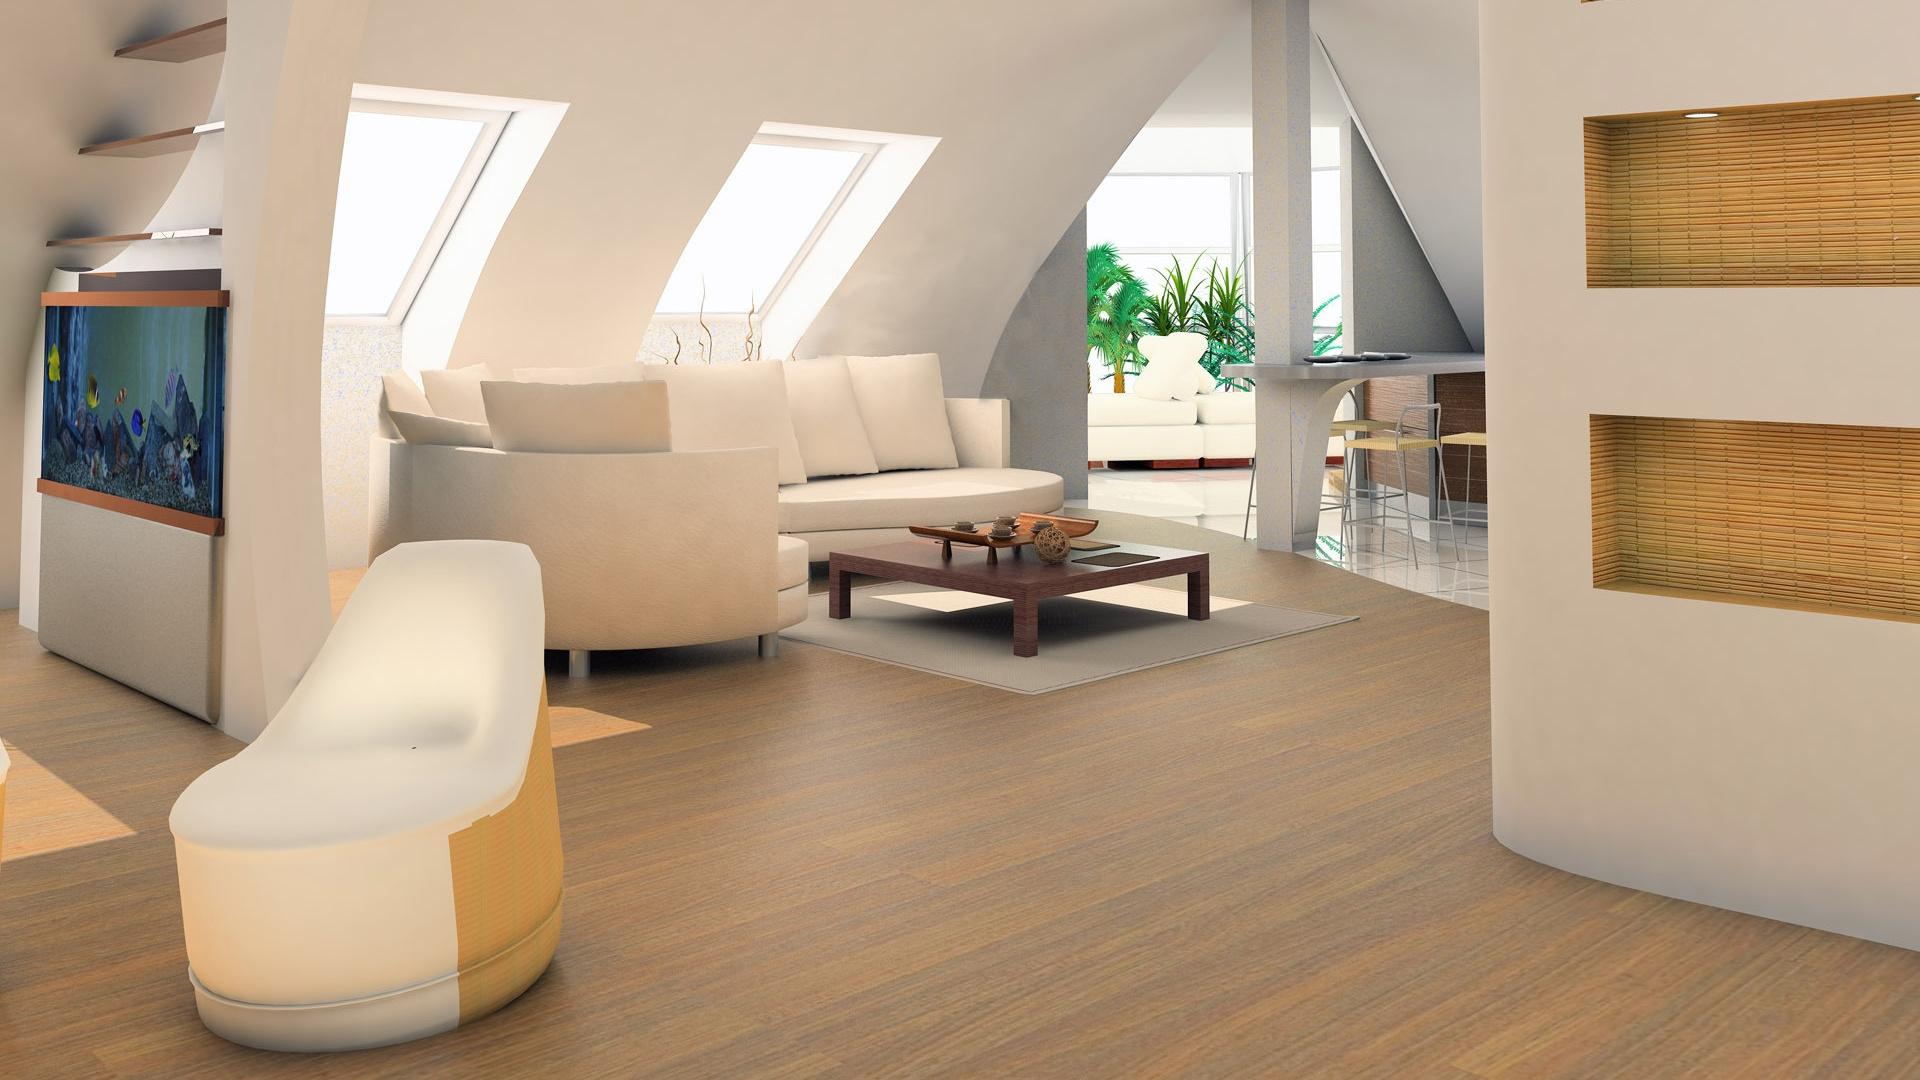 客厅, 现代建筑, 室内设计, 木地板, 地板 壁纸 1920x1080 允许